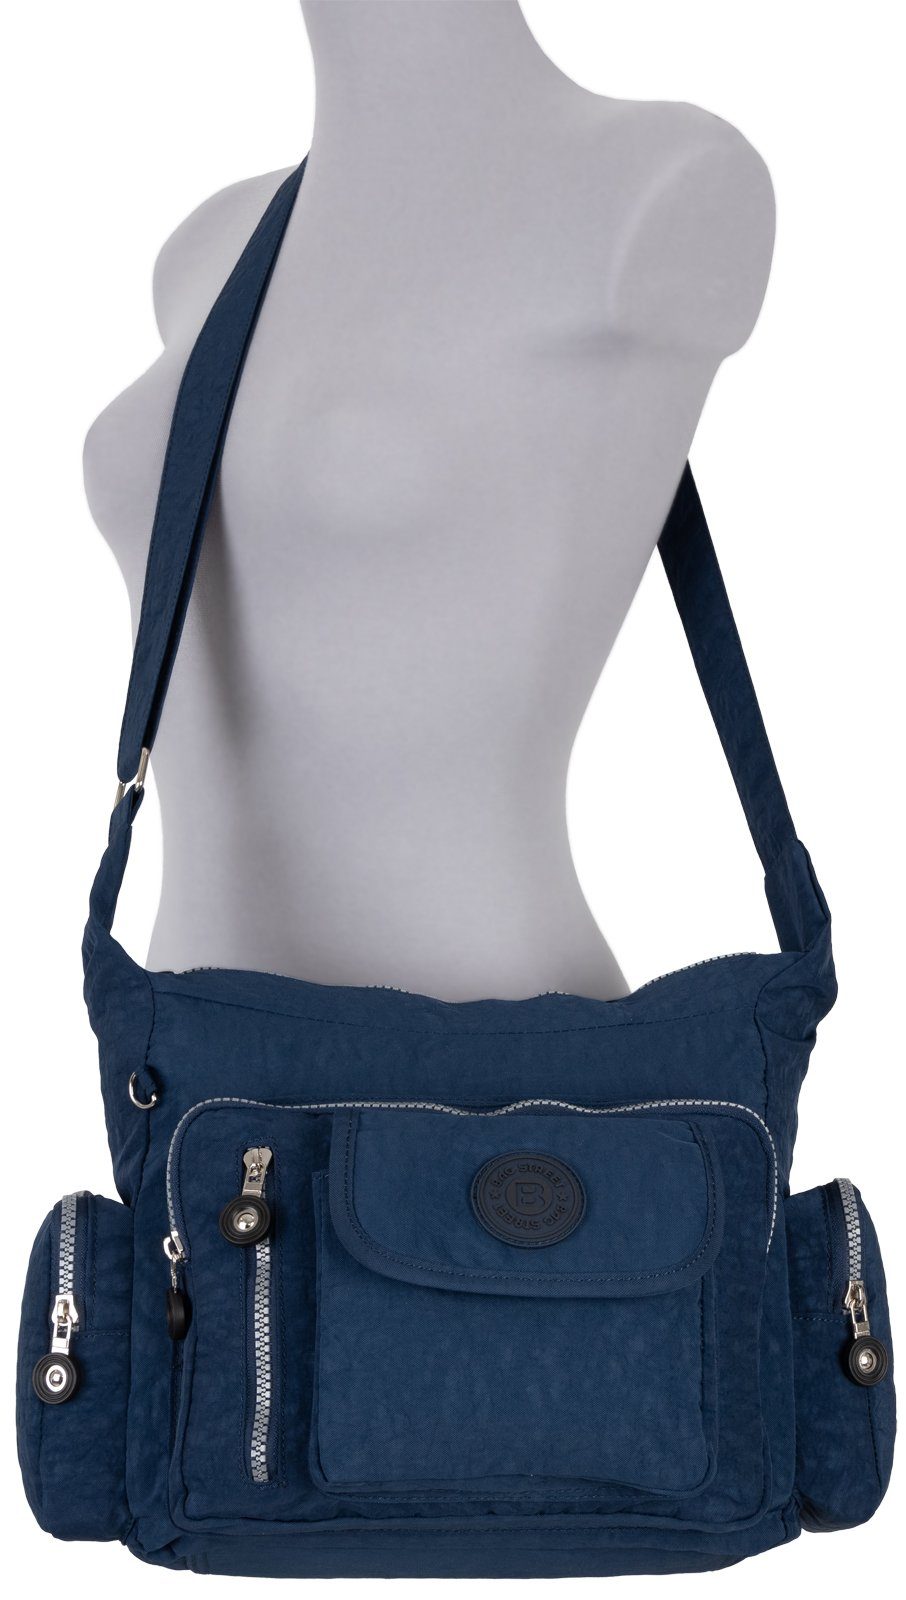 Taupe, Umhängetasche Handtasche Damentasche Umhängetasche STREET BAG Umhängetasche Blau Schultertasche tragbar Schultertasche, als